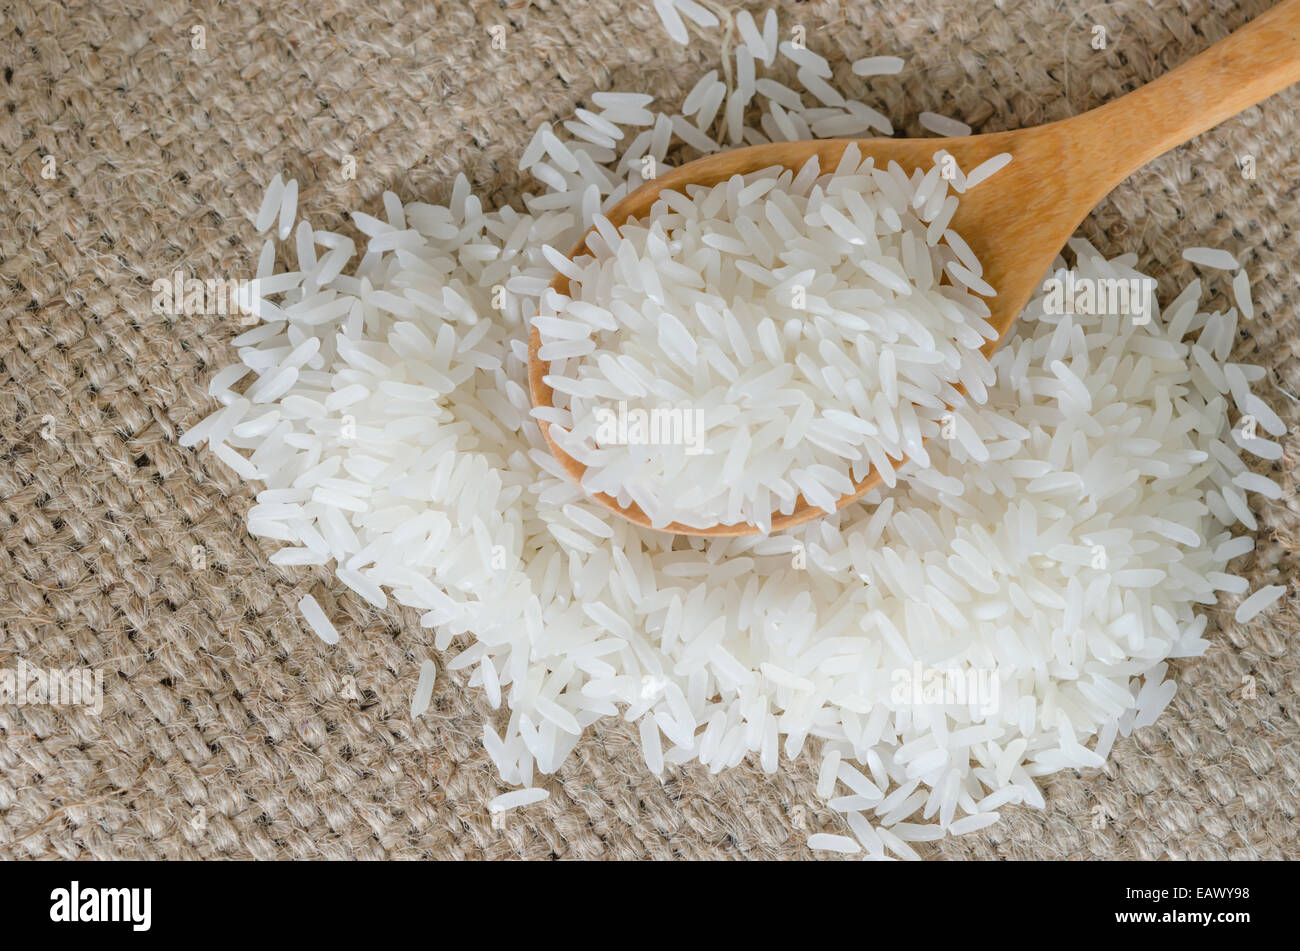 Les grains de riz blanc avec cuillère en bois sur le sac Banque D'Images